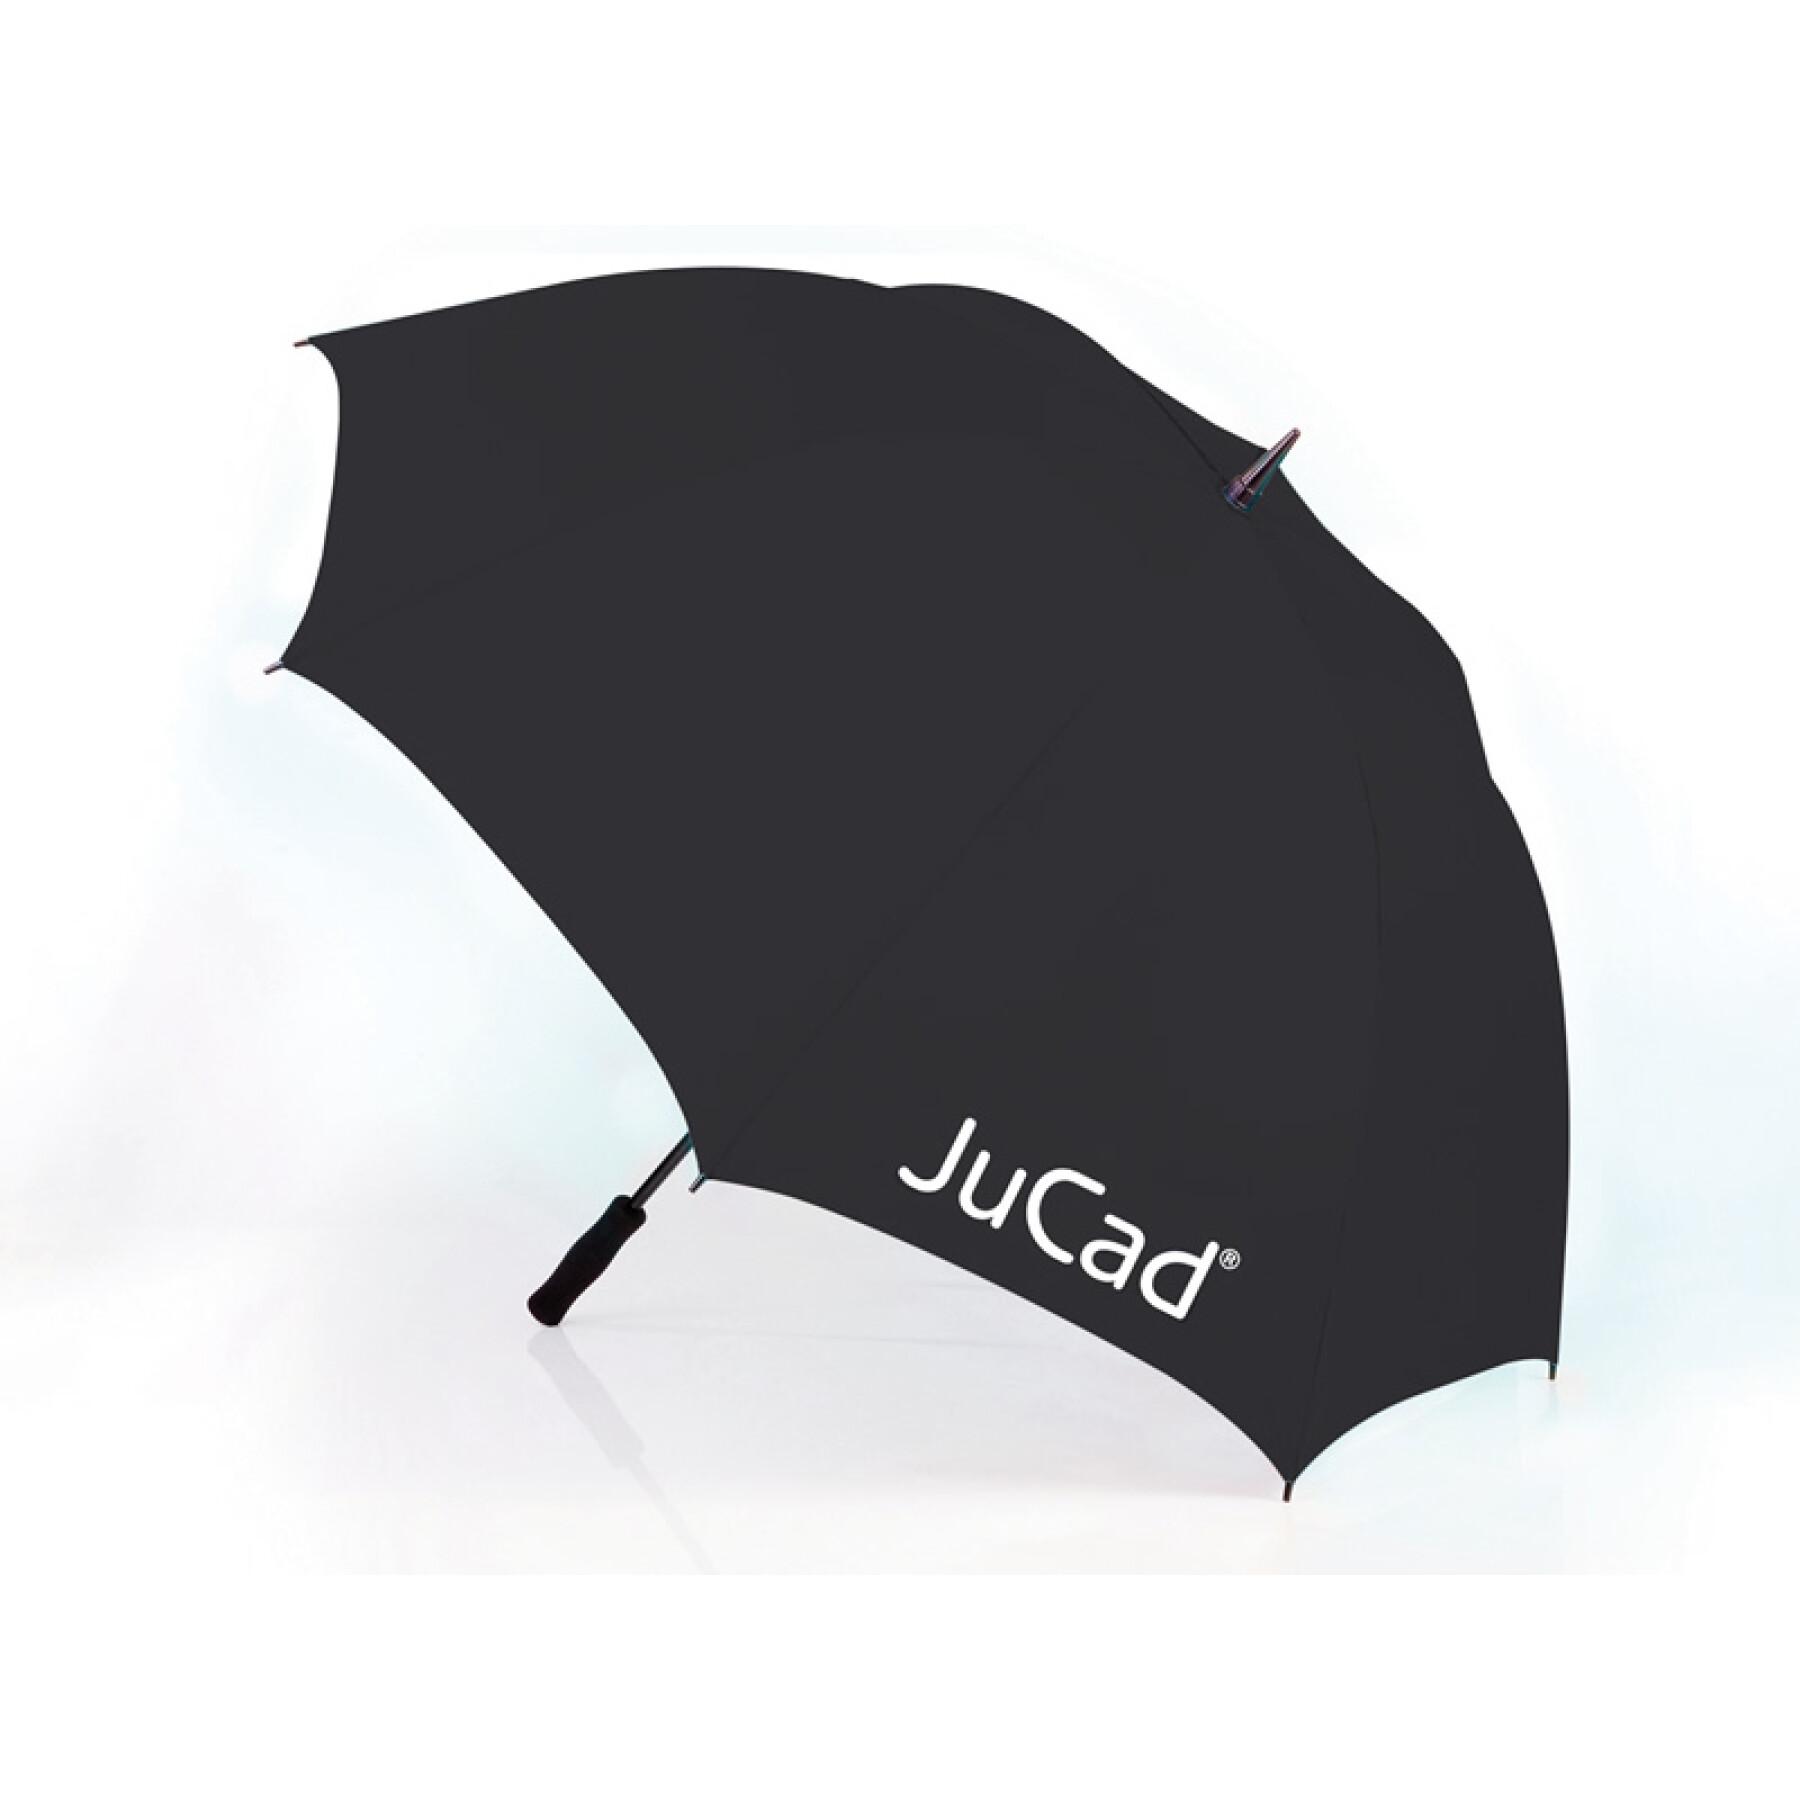 Guarda-chuva extra-grande e ultra-leve sem haste de fixação JuCad